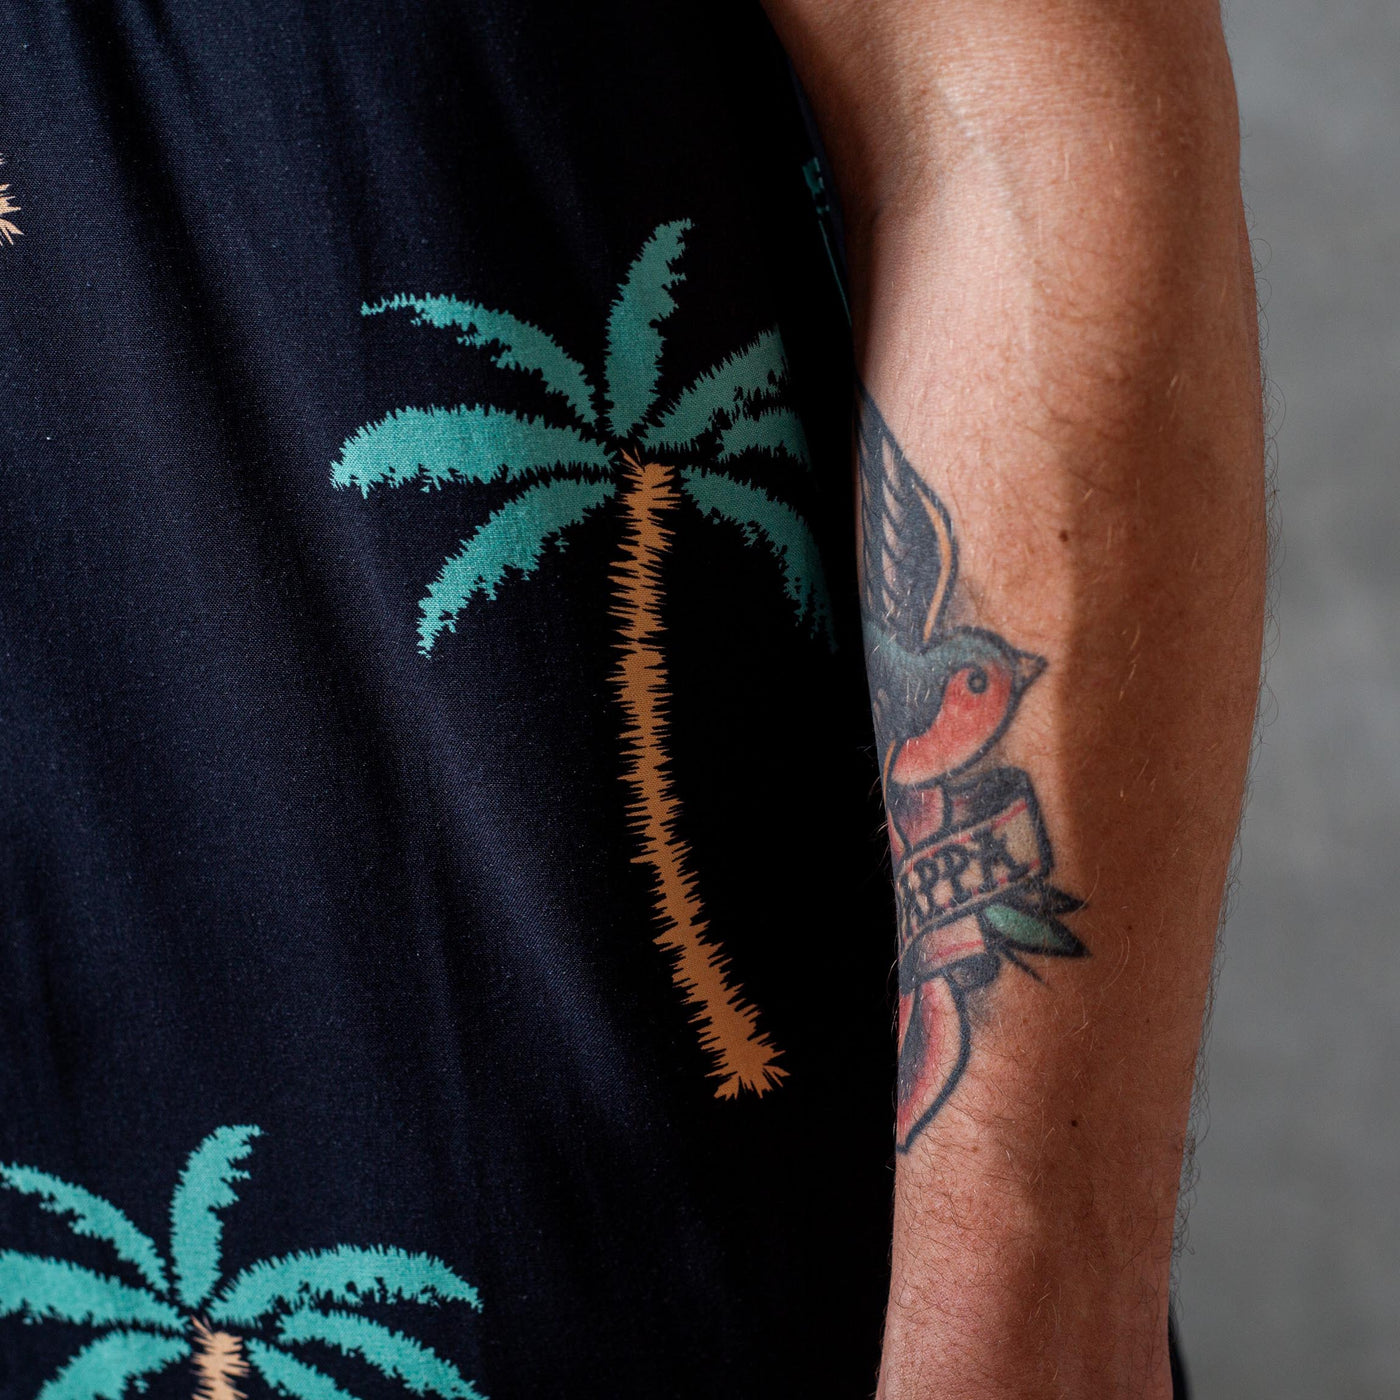 Duvin Design - Hawaiian Shirt - Palmy